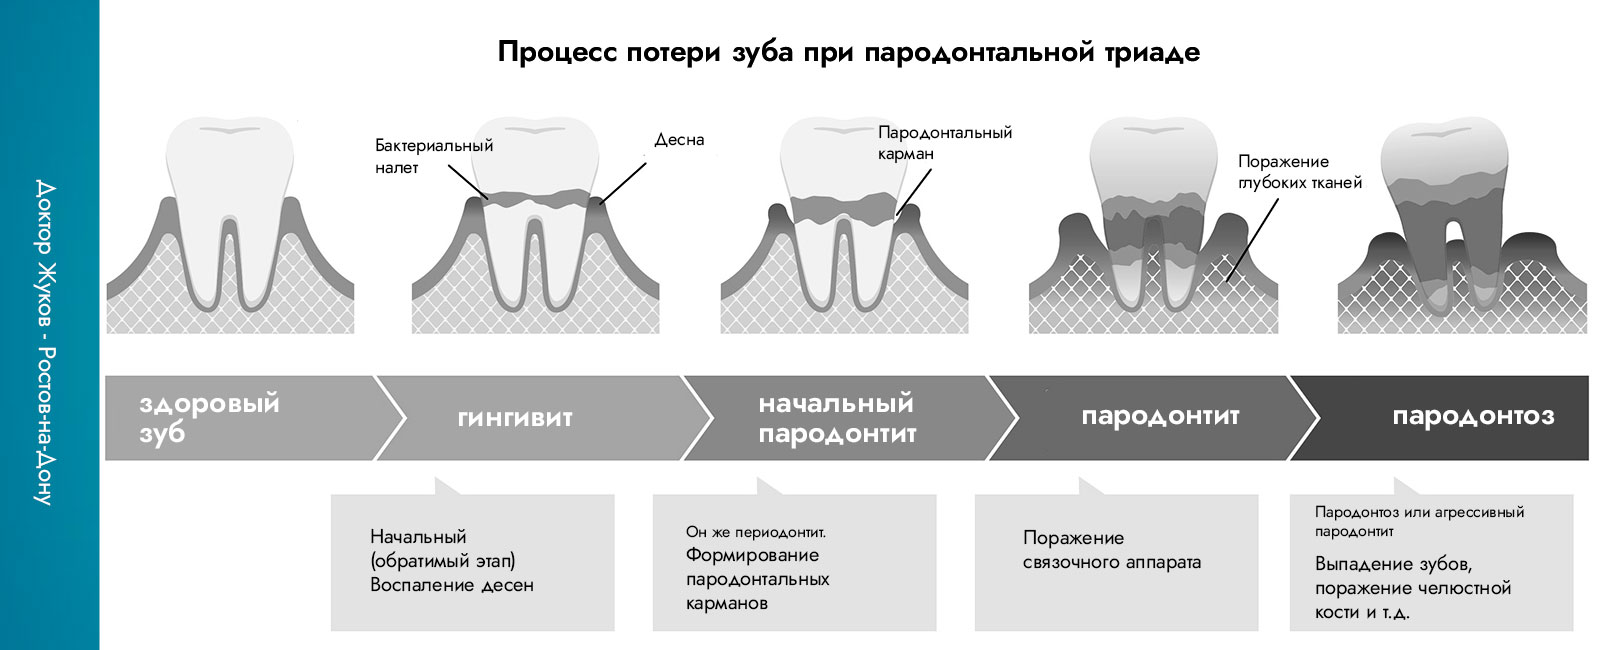 гингивит, пародонтит, пародонтоз - как происходит потеря зуба при пародонтальной триаде